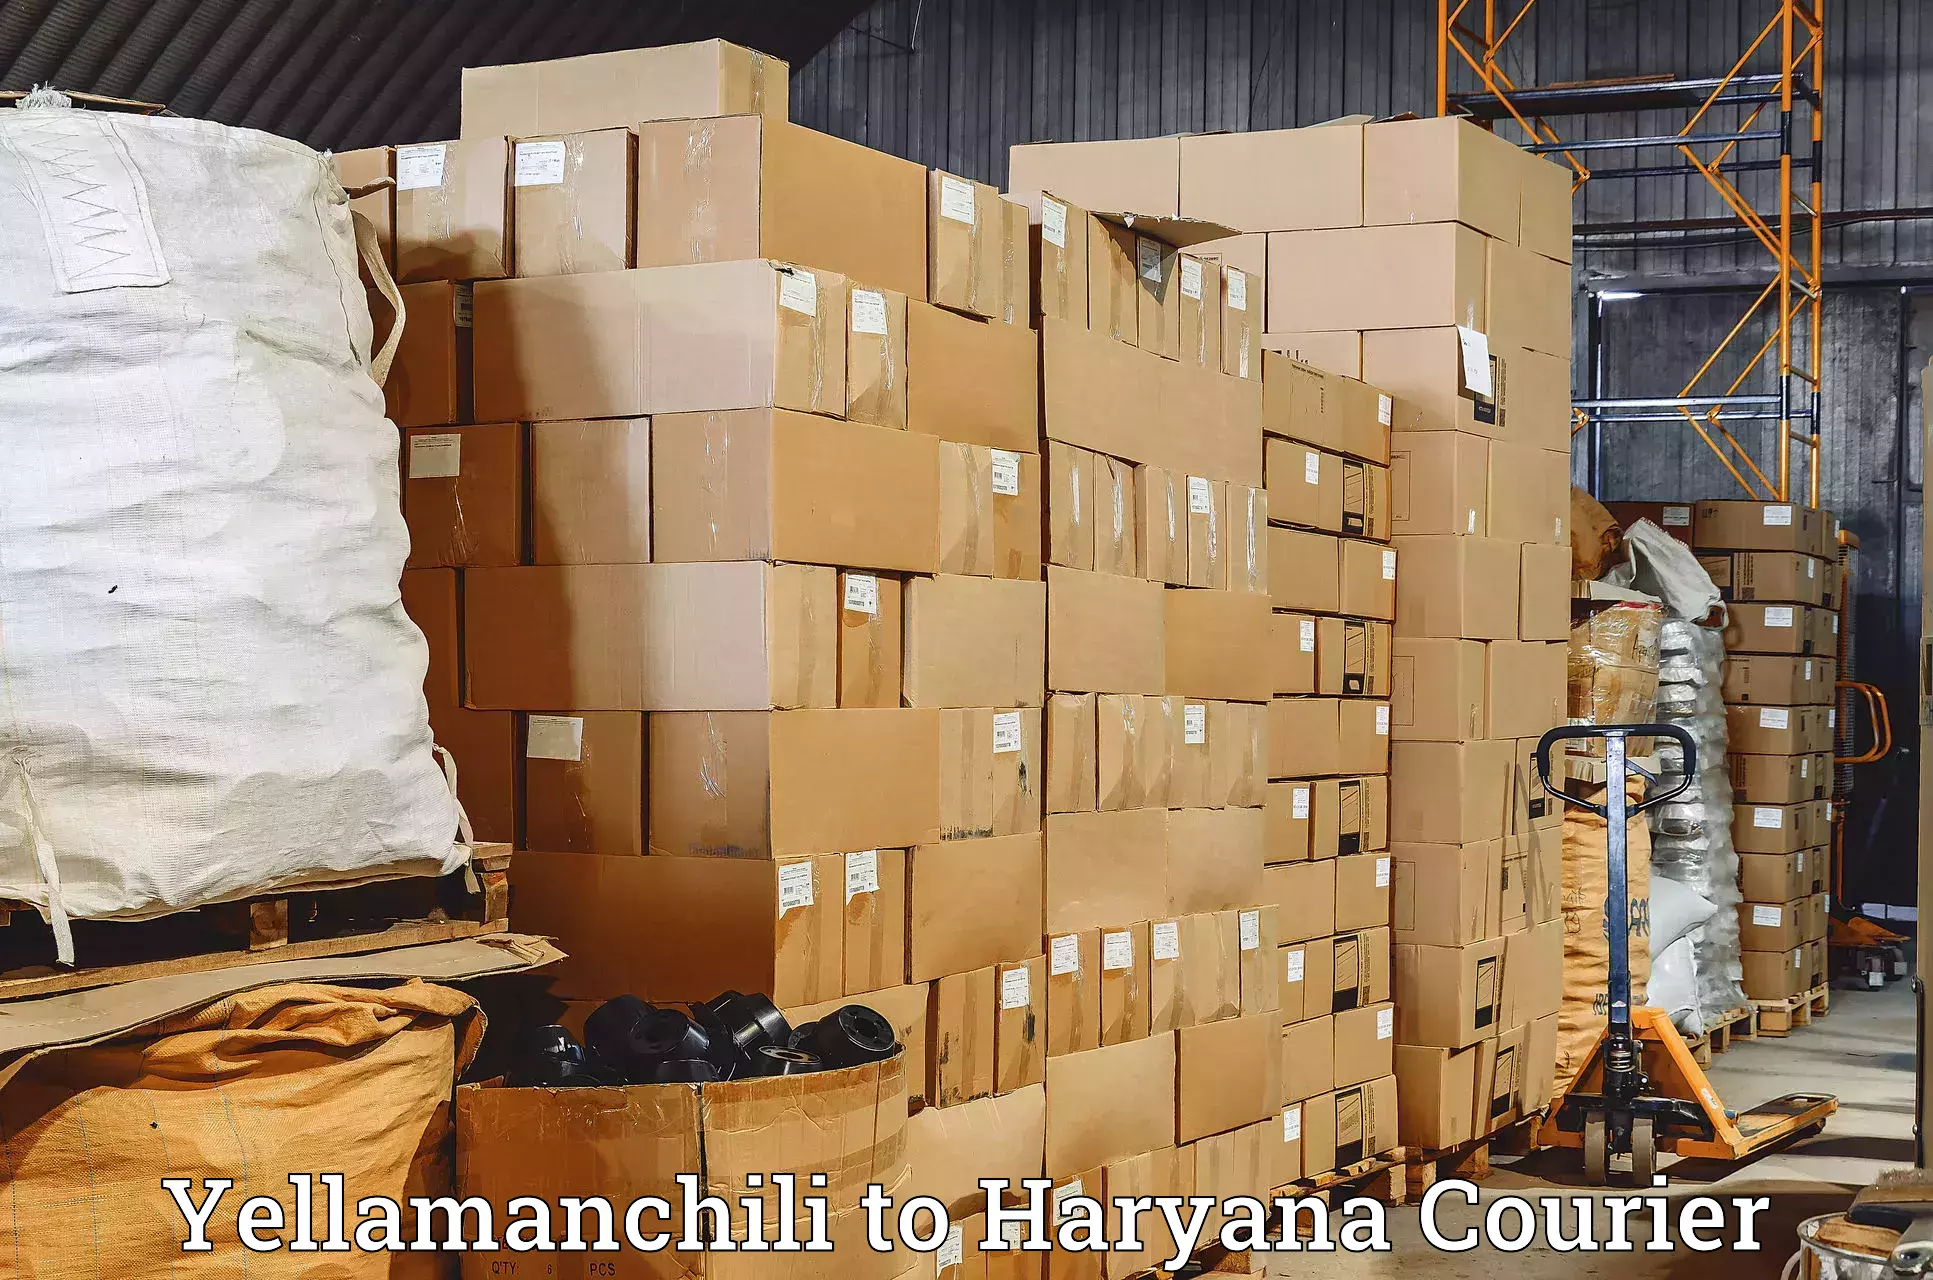 Express shipping Yellamanchili to Charkhari